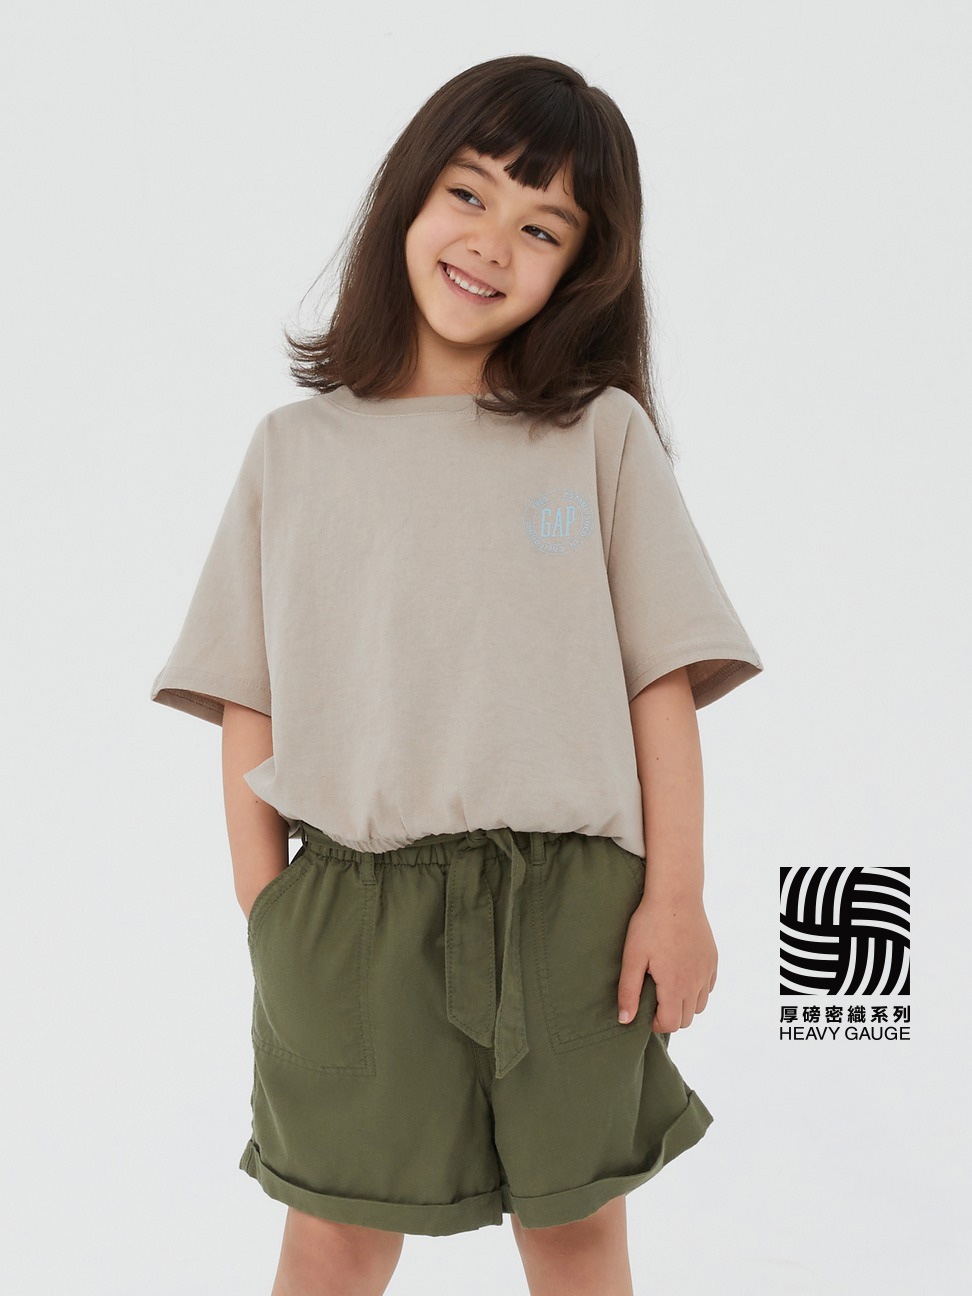 女童裝|Logo馬卡龍色短袖T恤-灰杏色